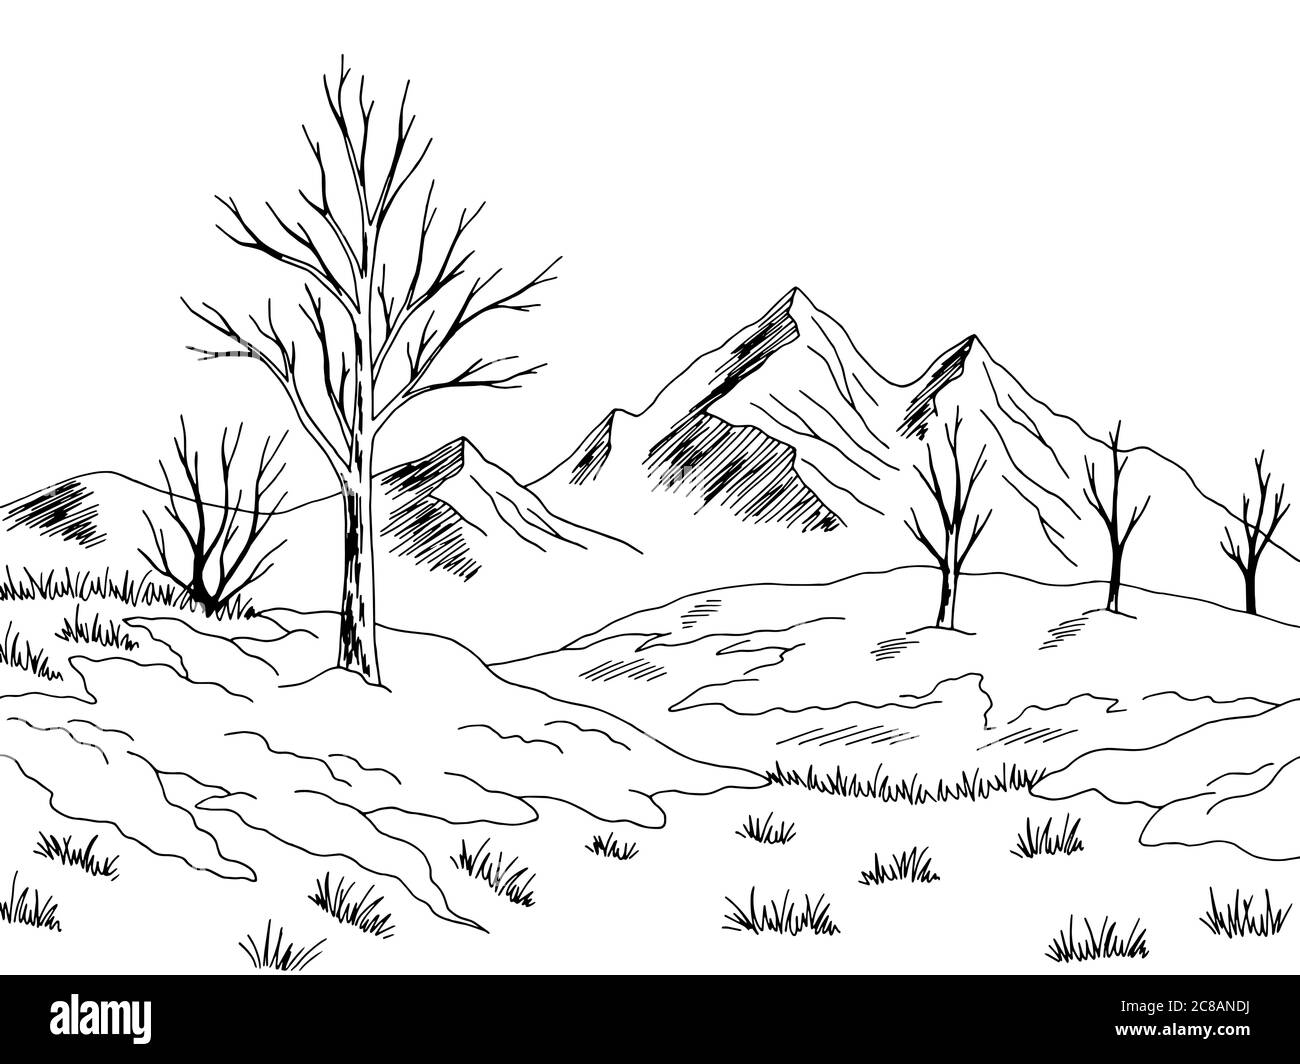 Frühling Landschaft Schnee schmelzen Grafik schwarz weiß Skizze Illustration Vektor Stock Vektor